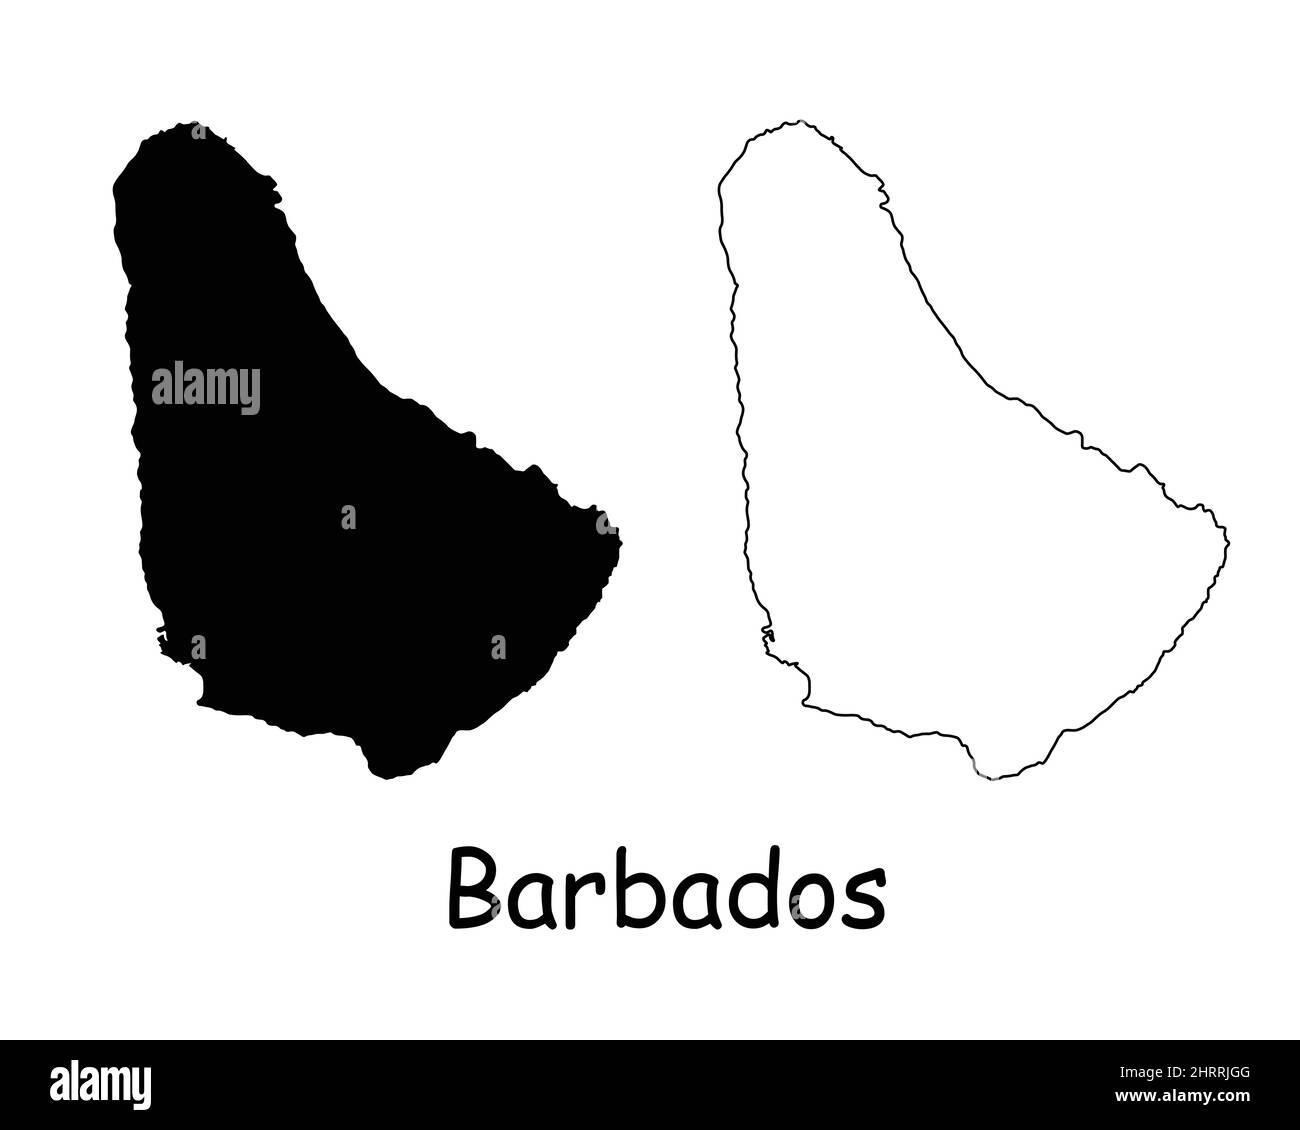 Mapa de Barbados. Mapa de silueta y contorno negro barbadense aislado sobre fondo blanco. Bajan Territory Border Boundary Line Icono Signo Símbolo Clipart E Ilustración del Vector